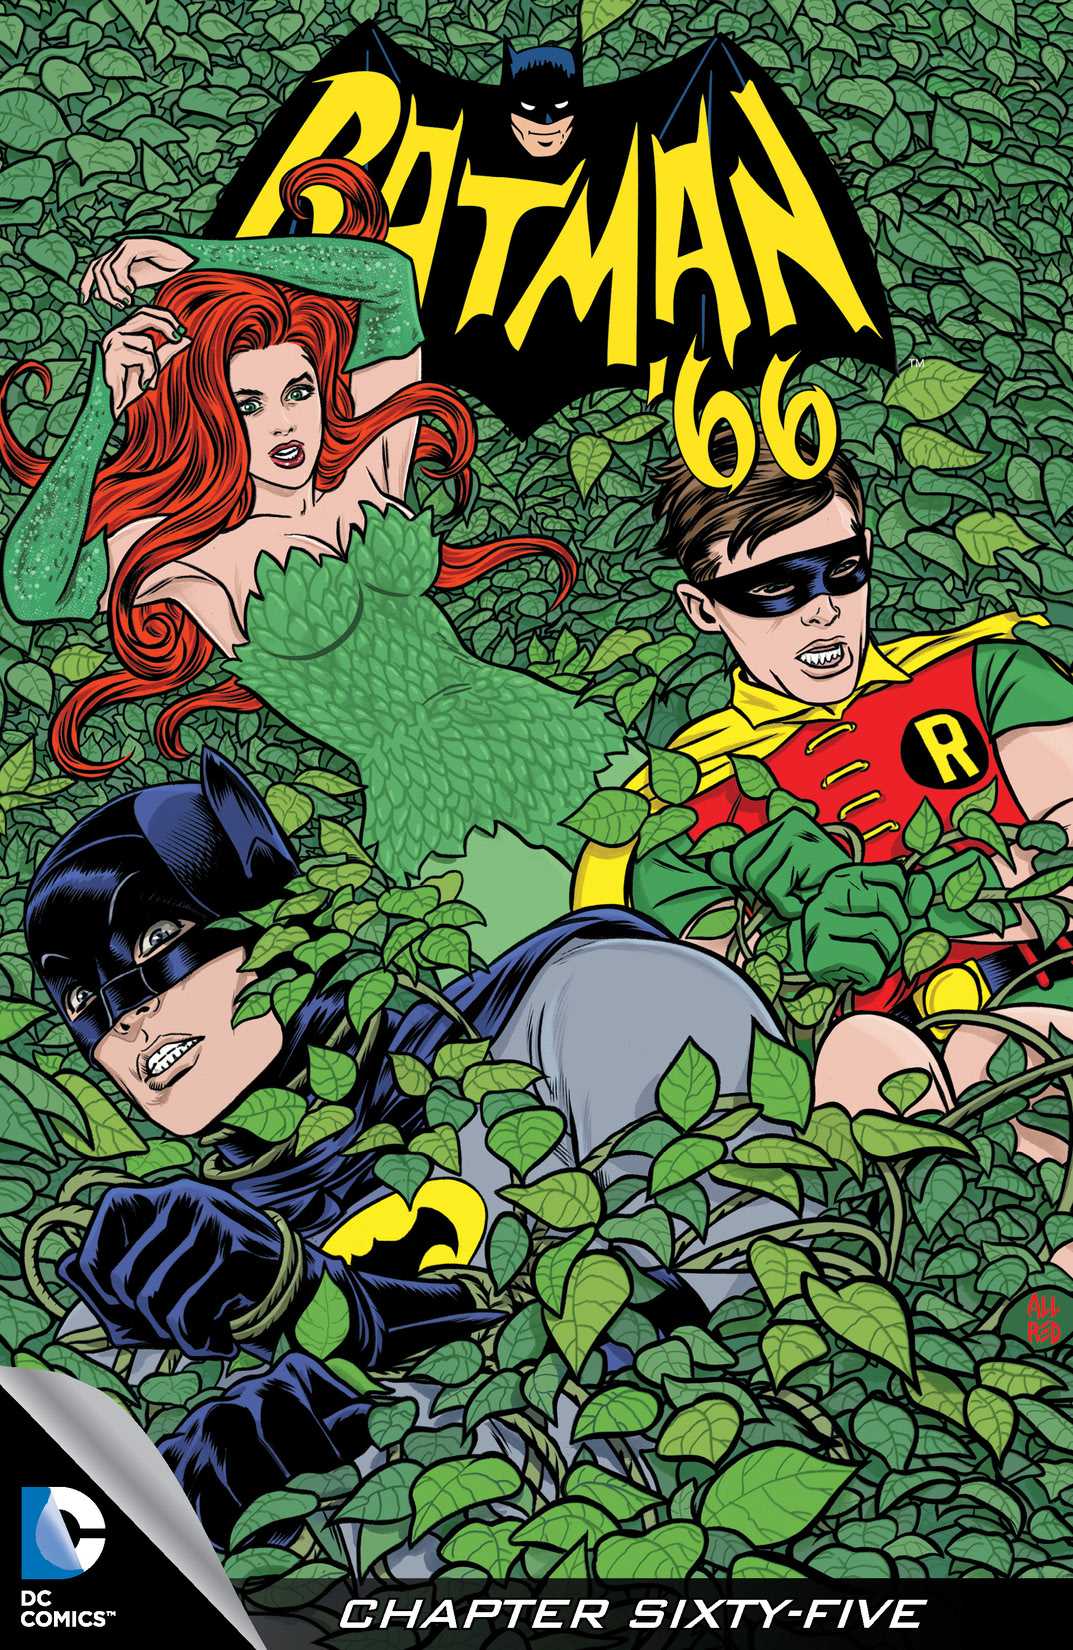 Batman '66 #65 preview images